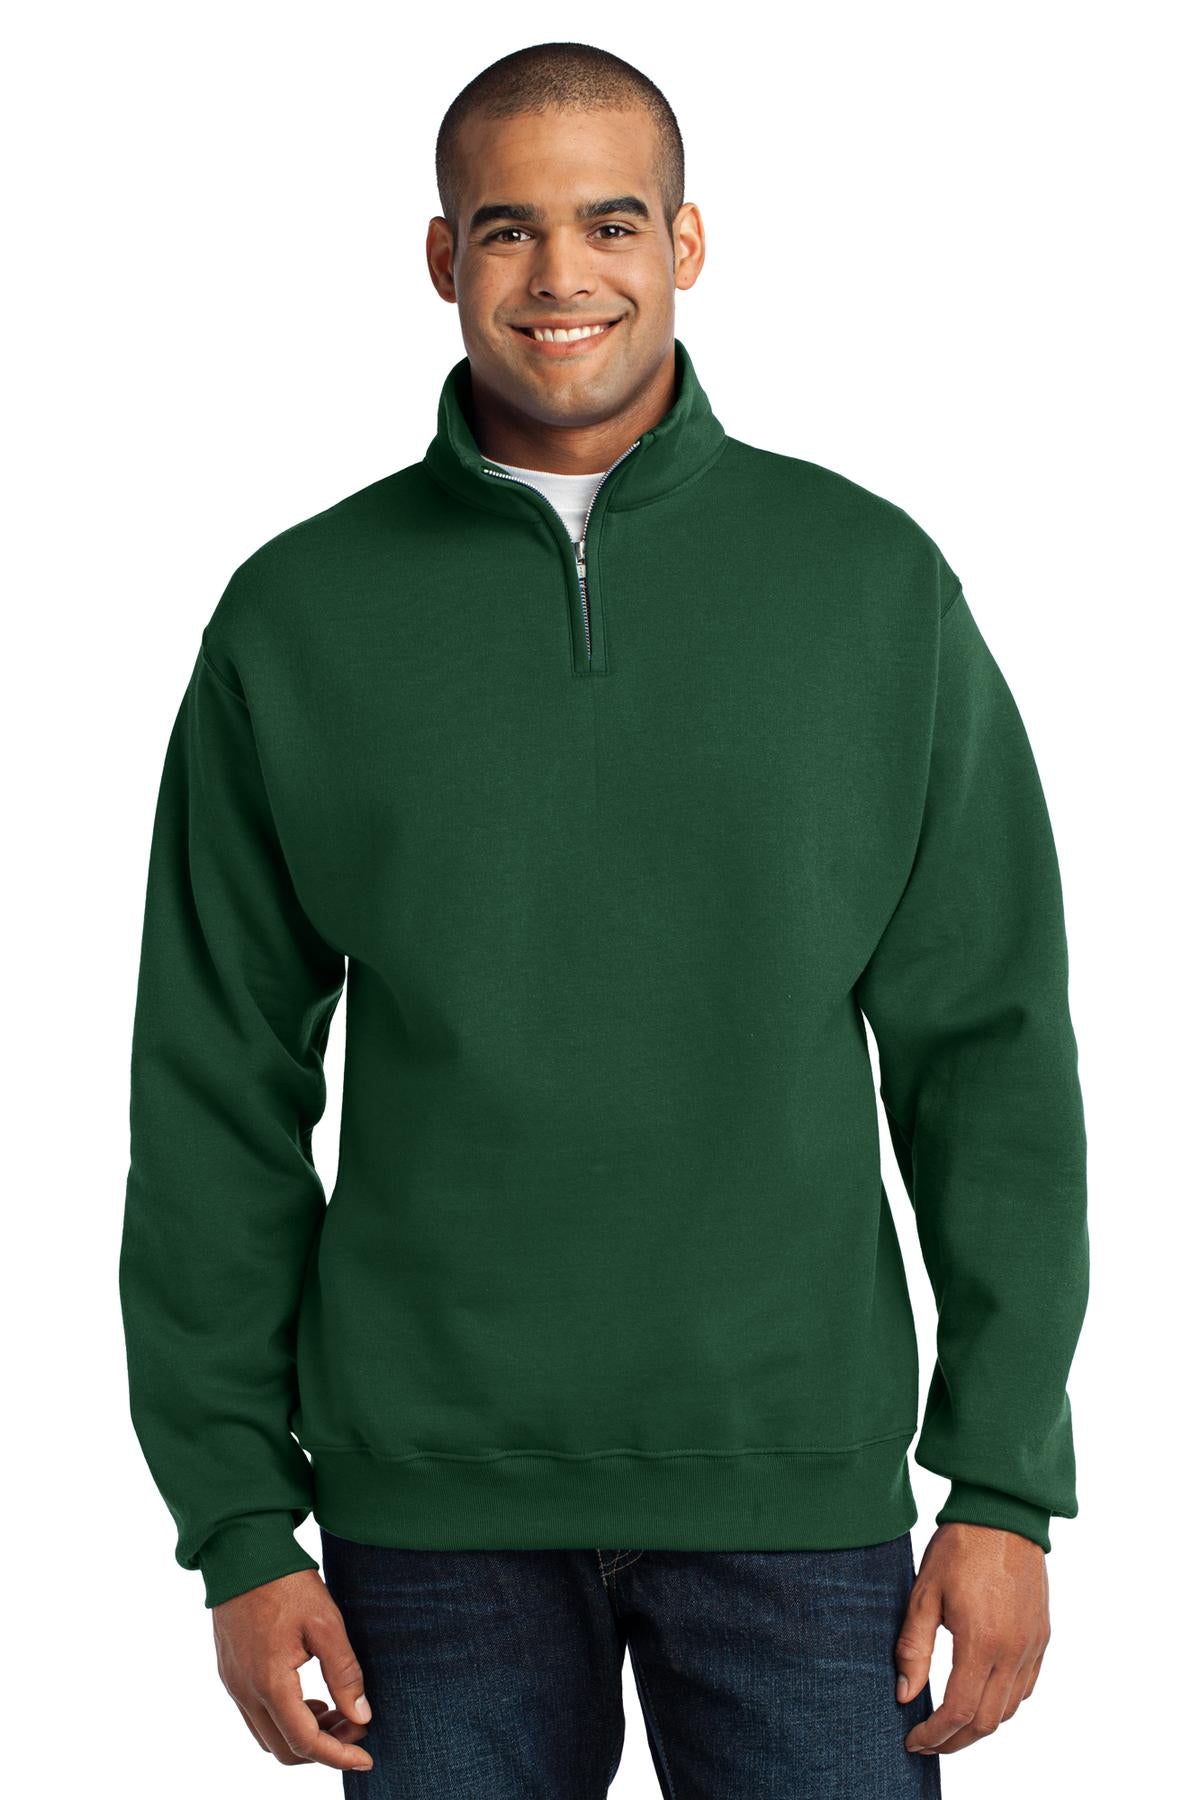 JERZEES® - NuBlend® 1/4-Zip Cadet Collar Sweatshirt. 995M